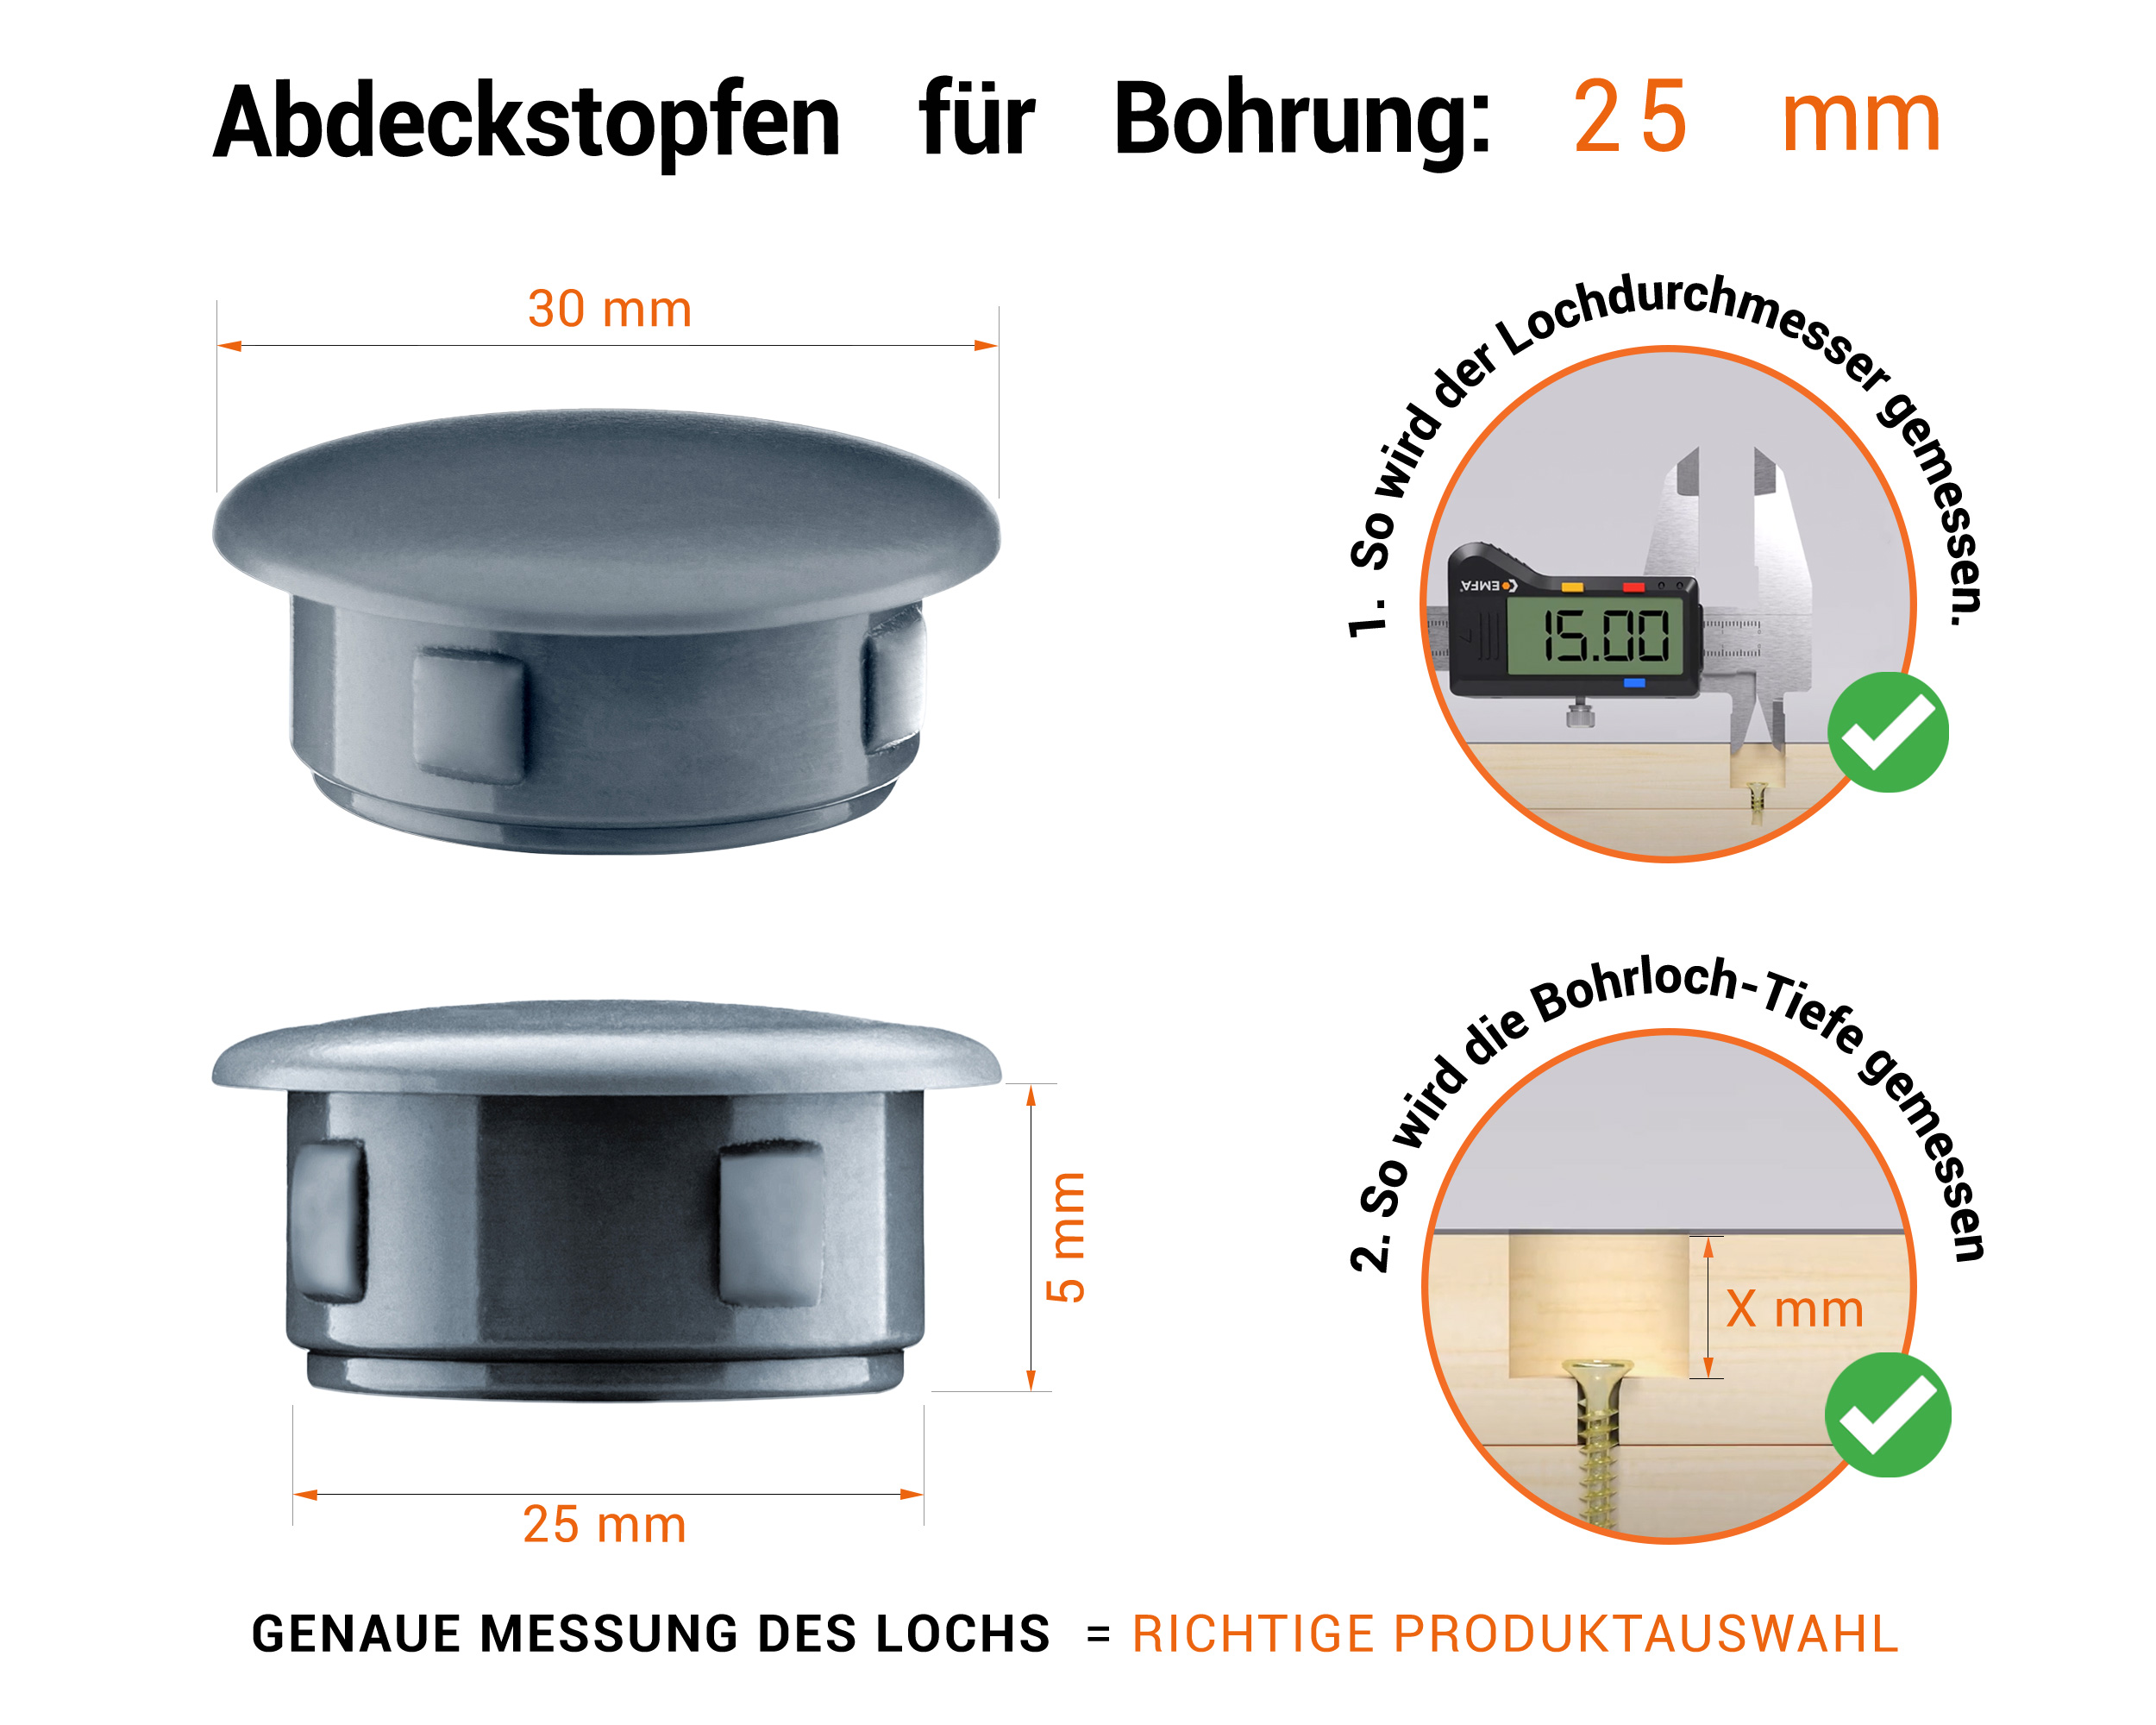 Anthrazite Blindstopfen aus Kunststoff für Bohrung 25 mmmm mit technischen Abmessungen und Anleitung für korrekte Messung